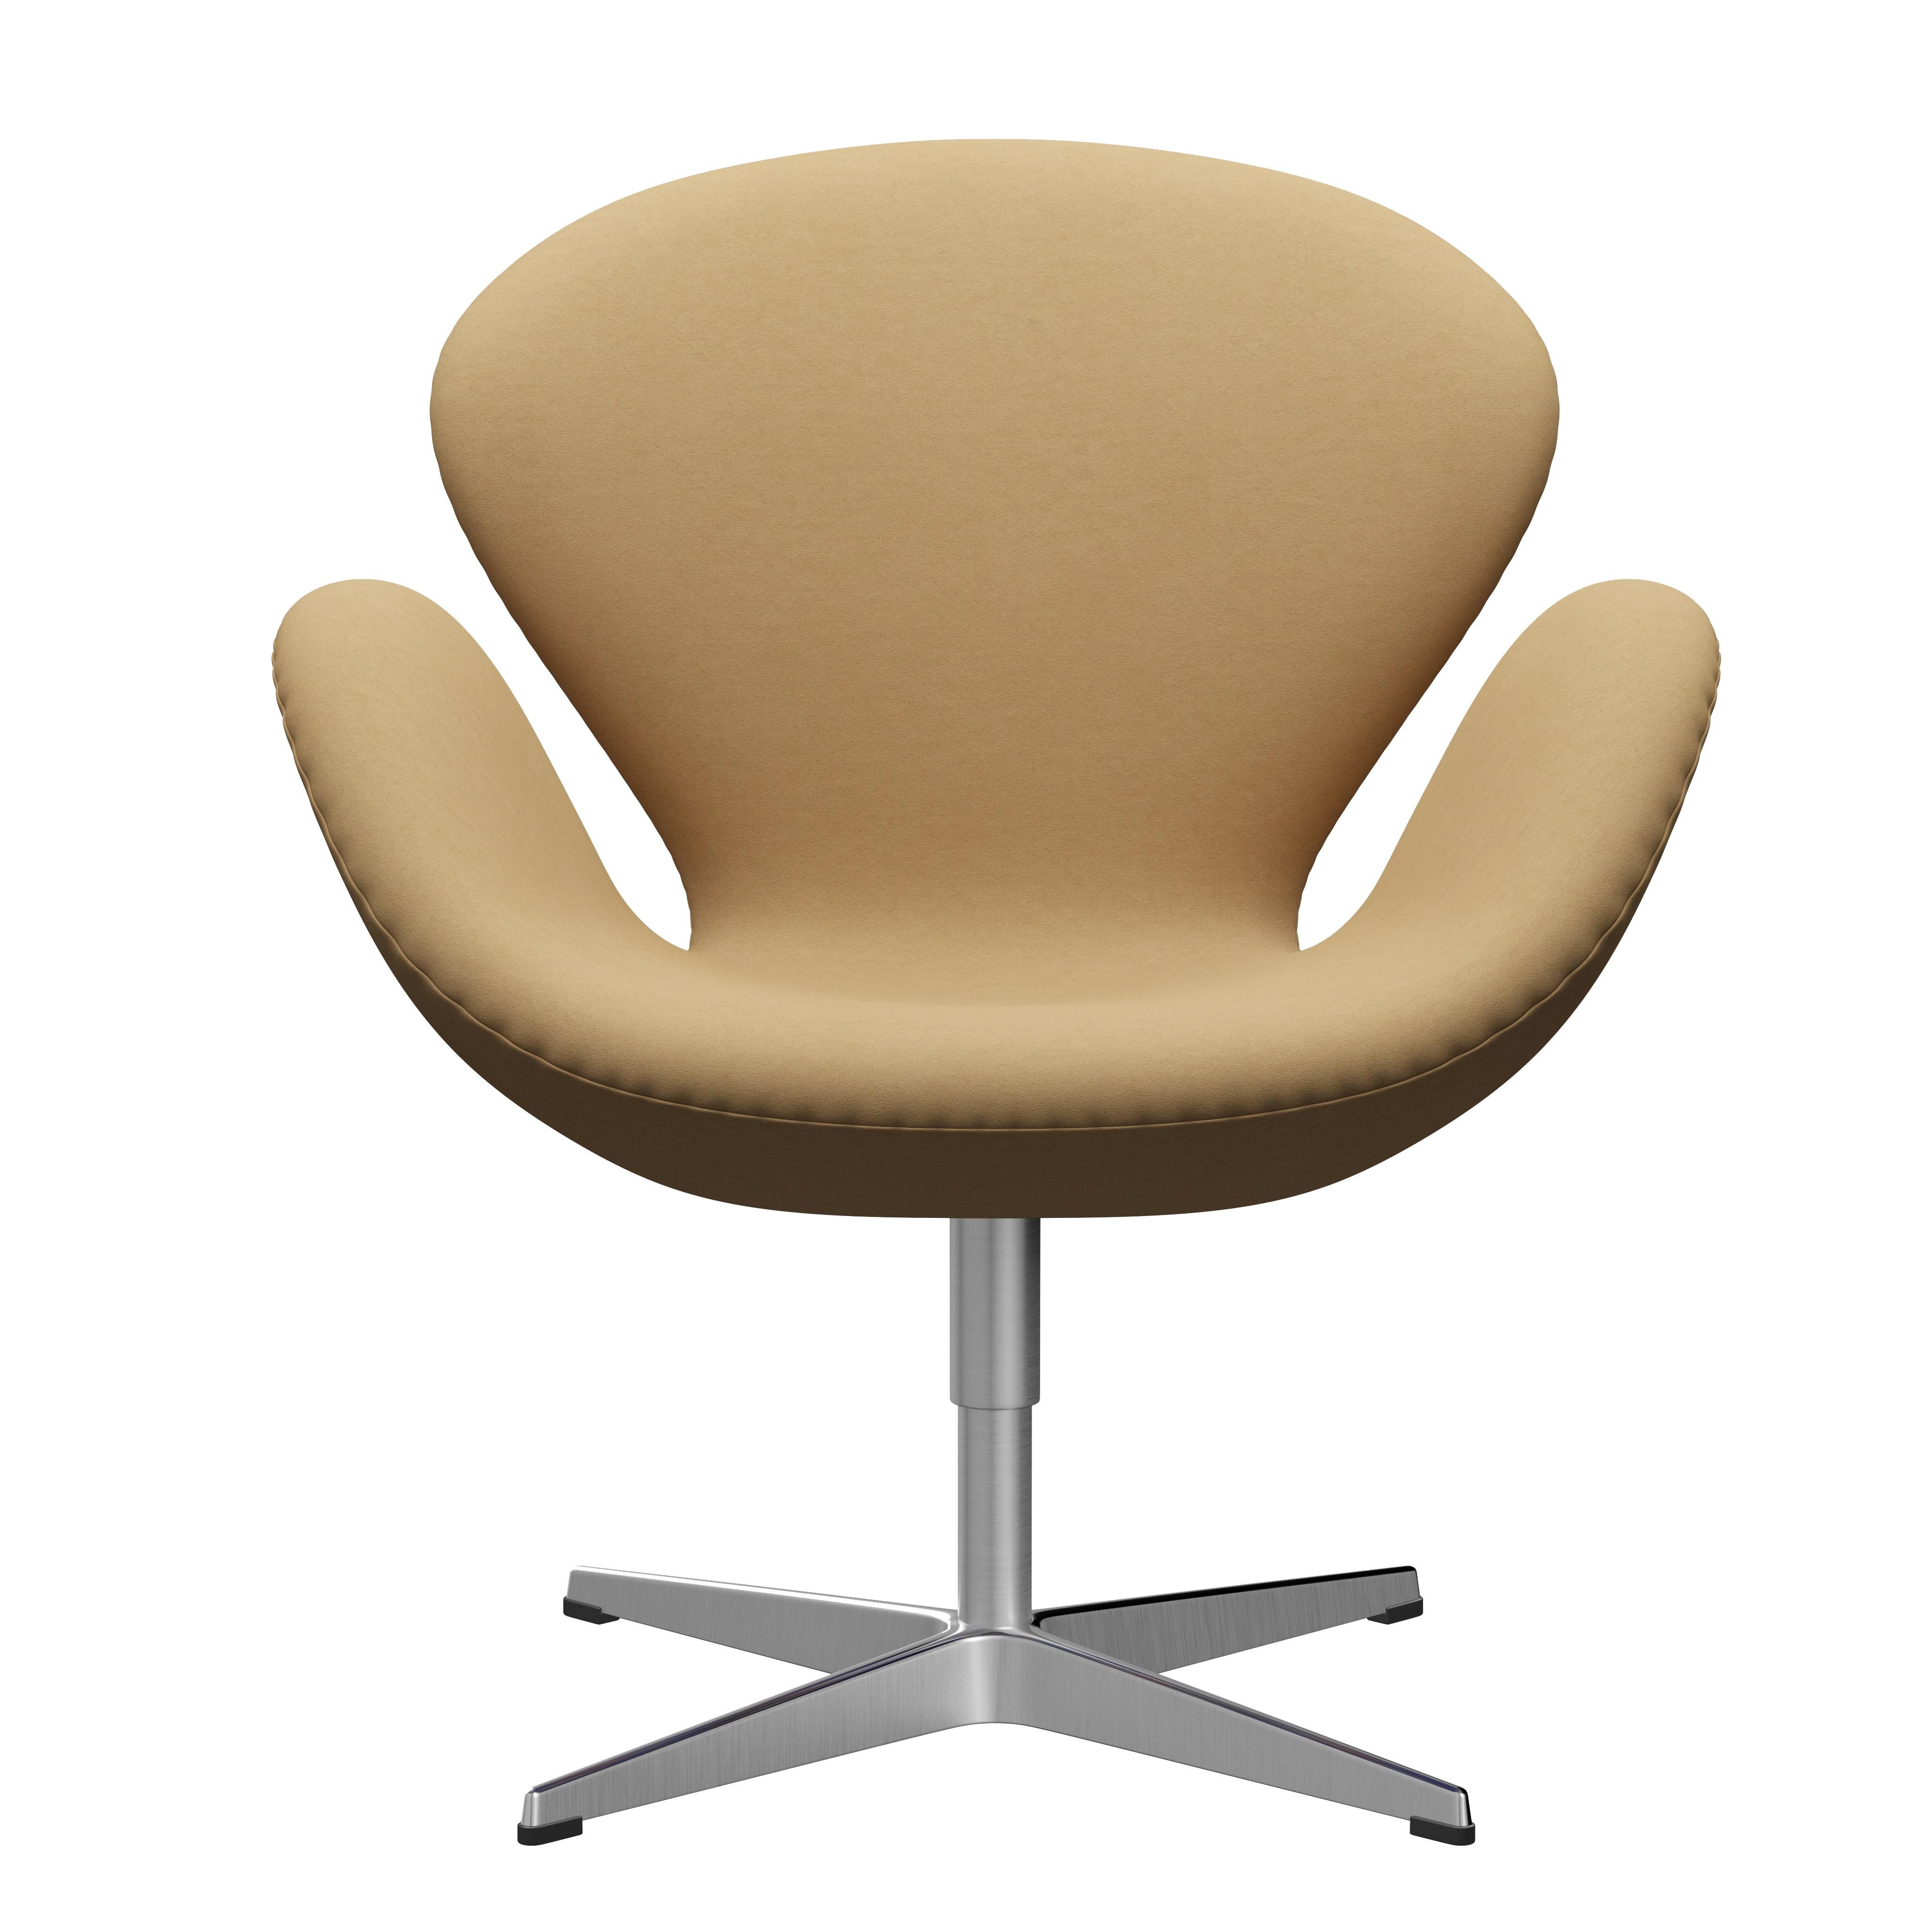 Arne Jacobsen 'Swan' Chair for Fritz Hansen in Fabric Upholstery (Cat. 3) For Sale 10